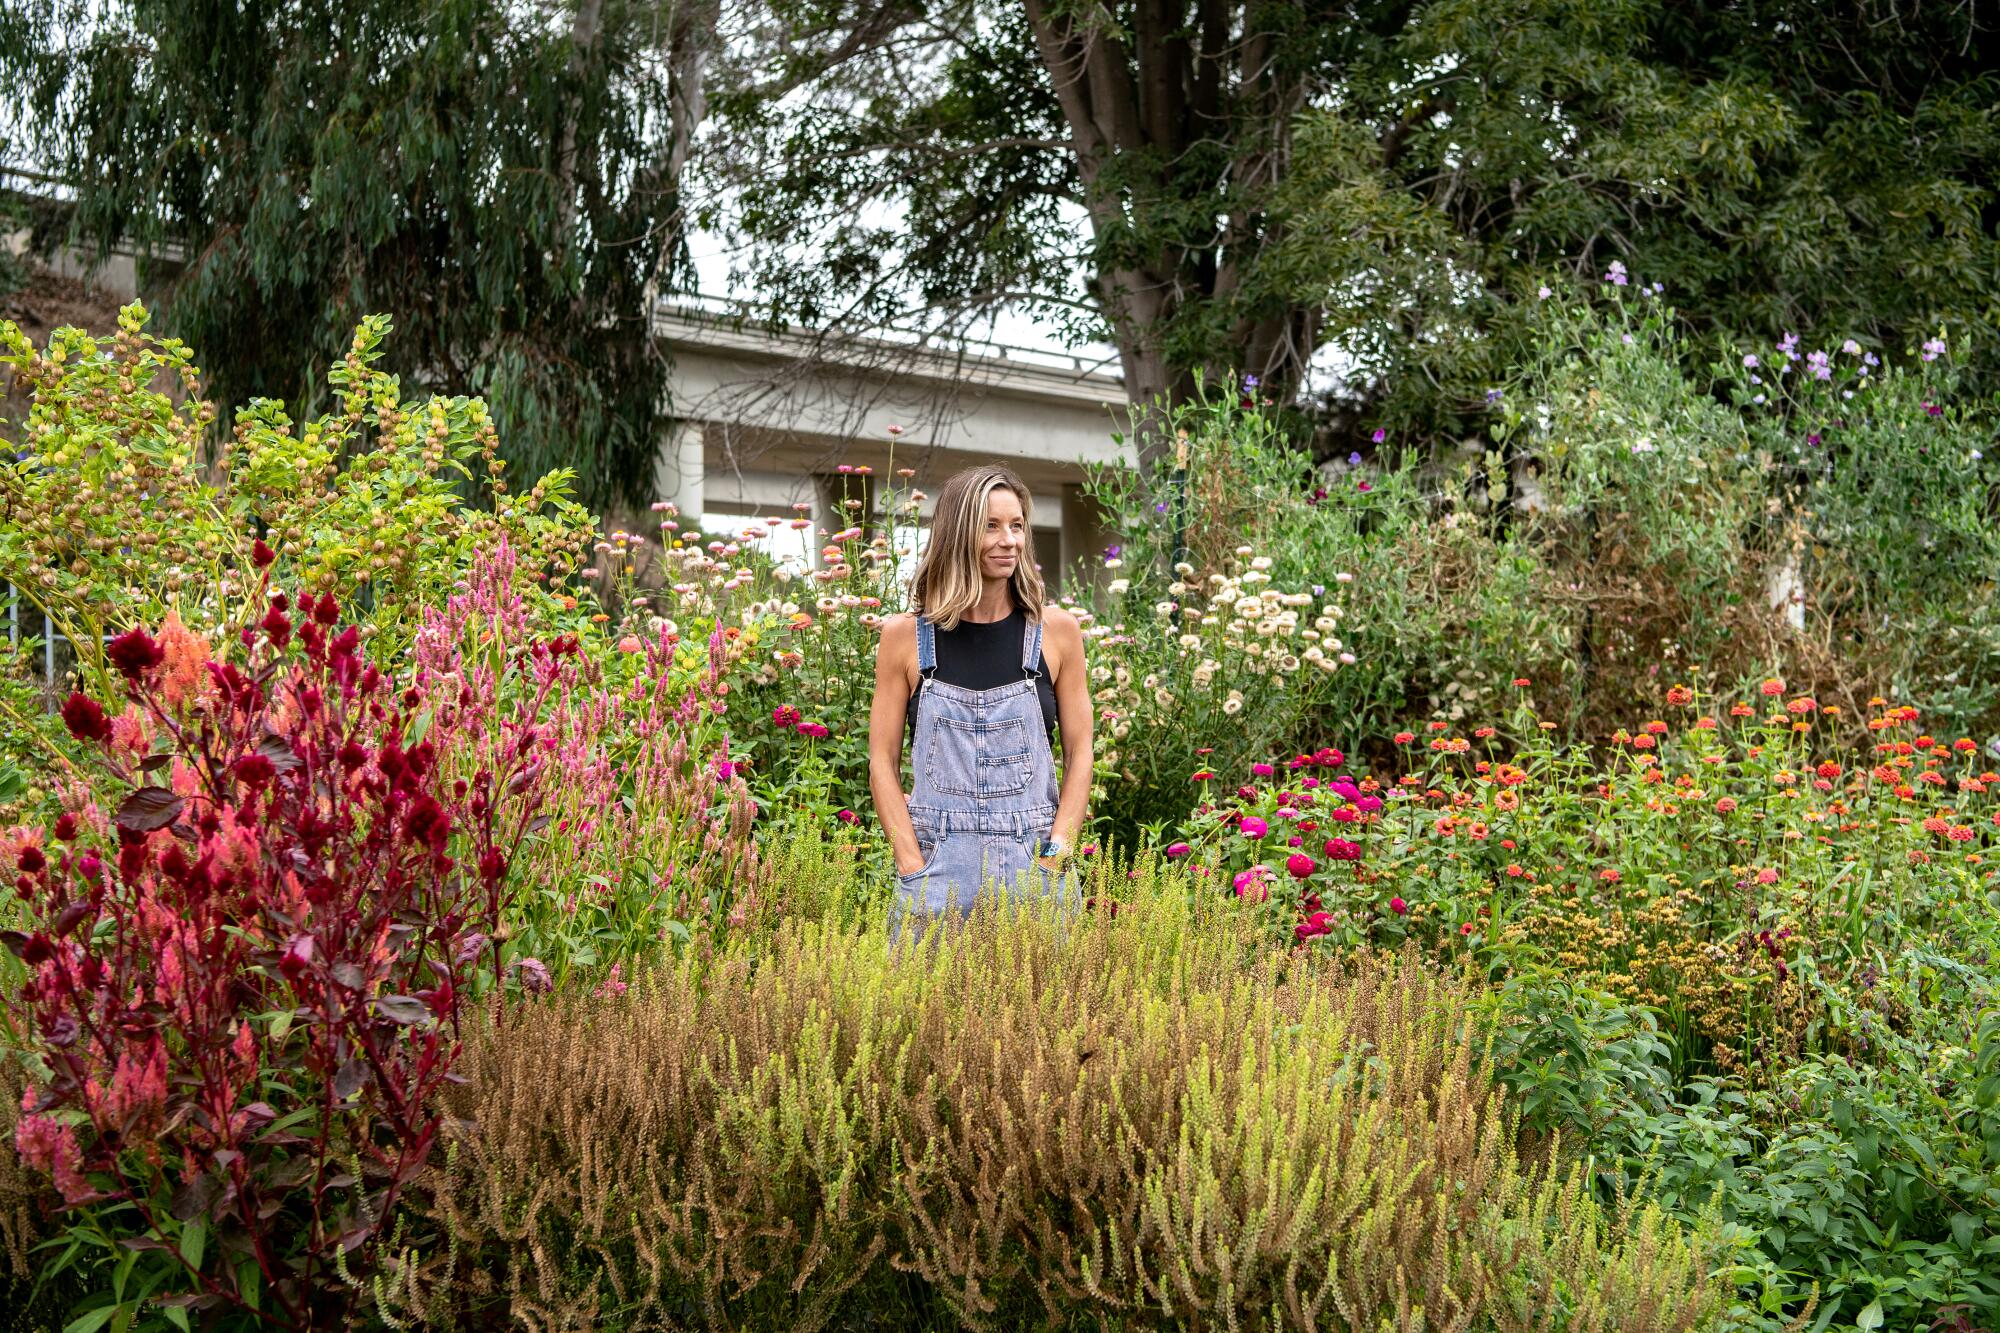 A woman stands in a flower garden